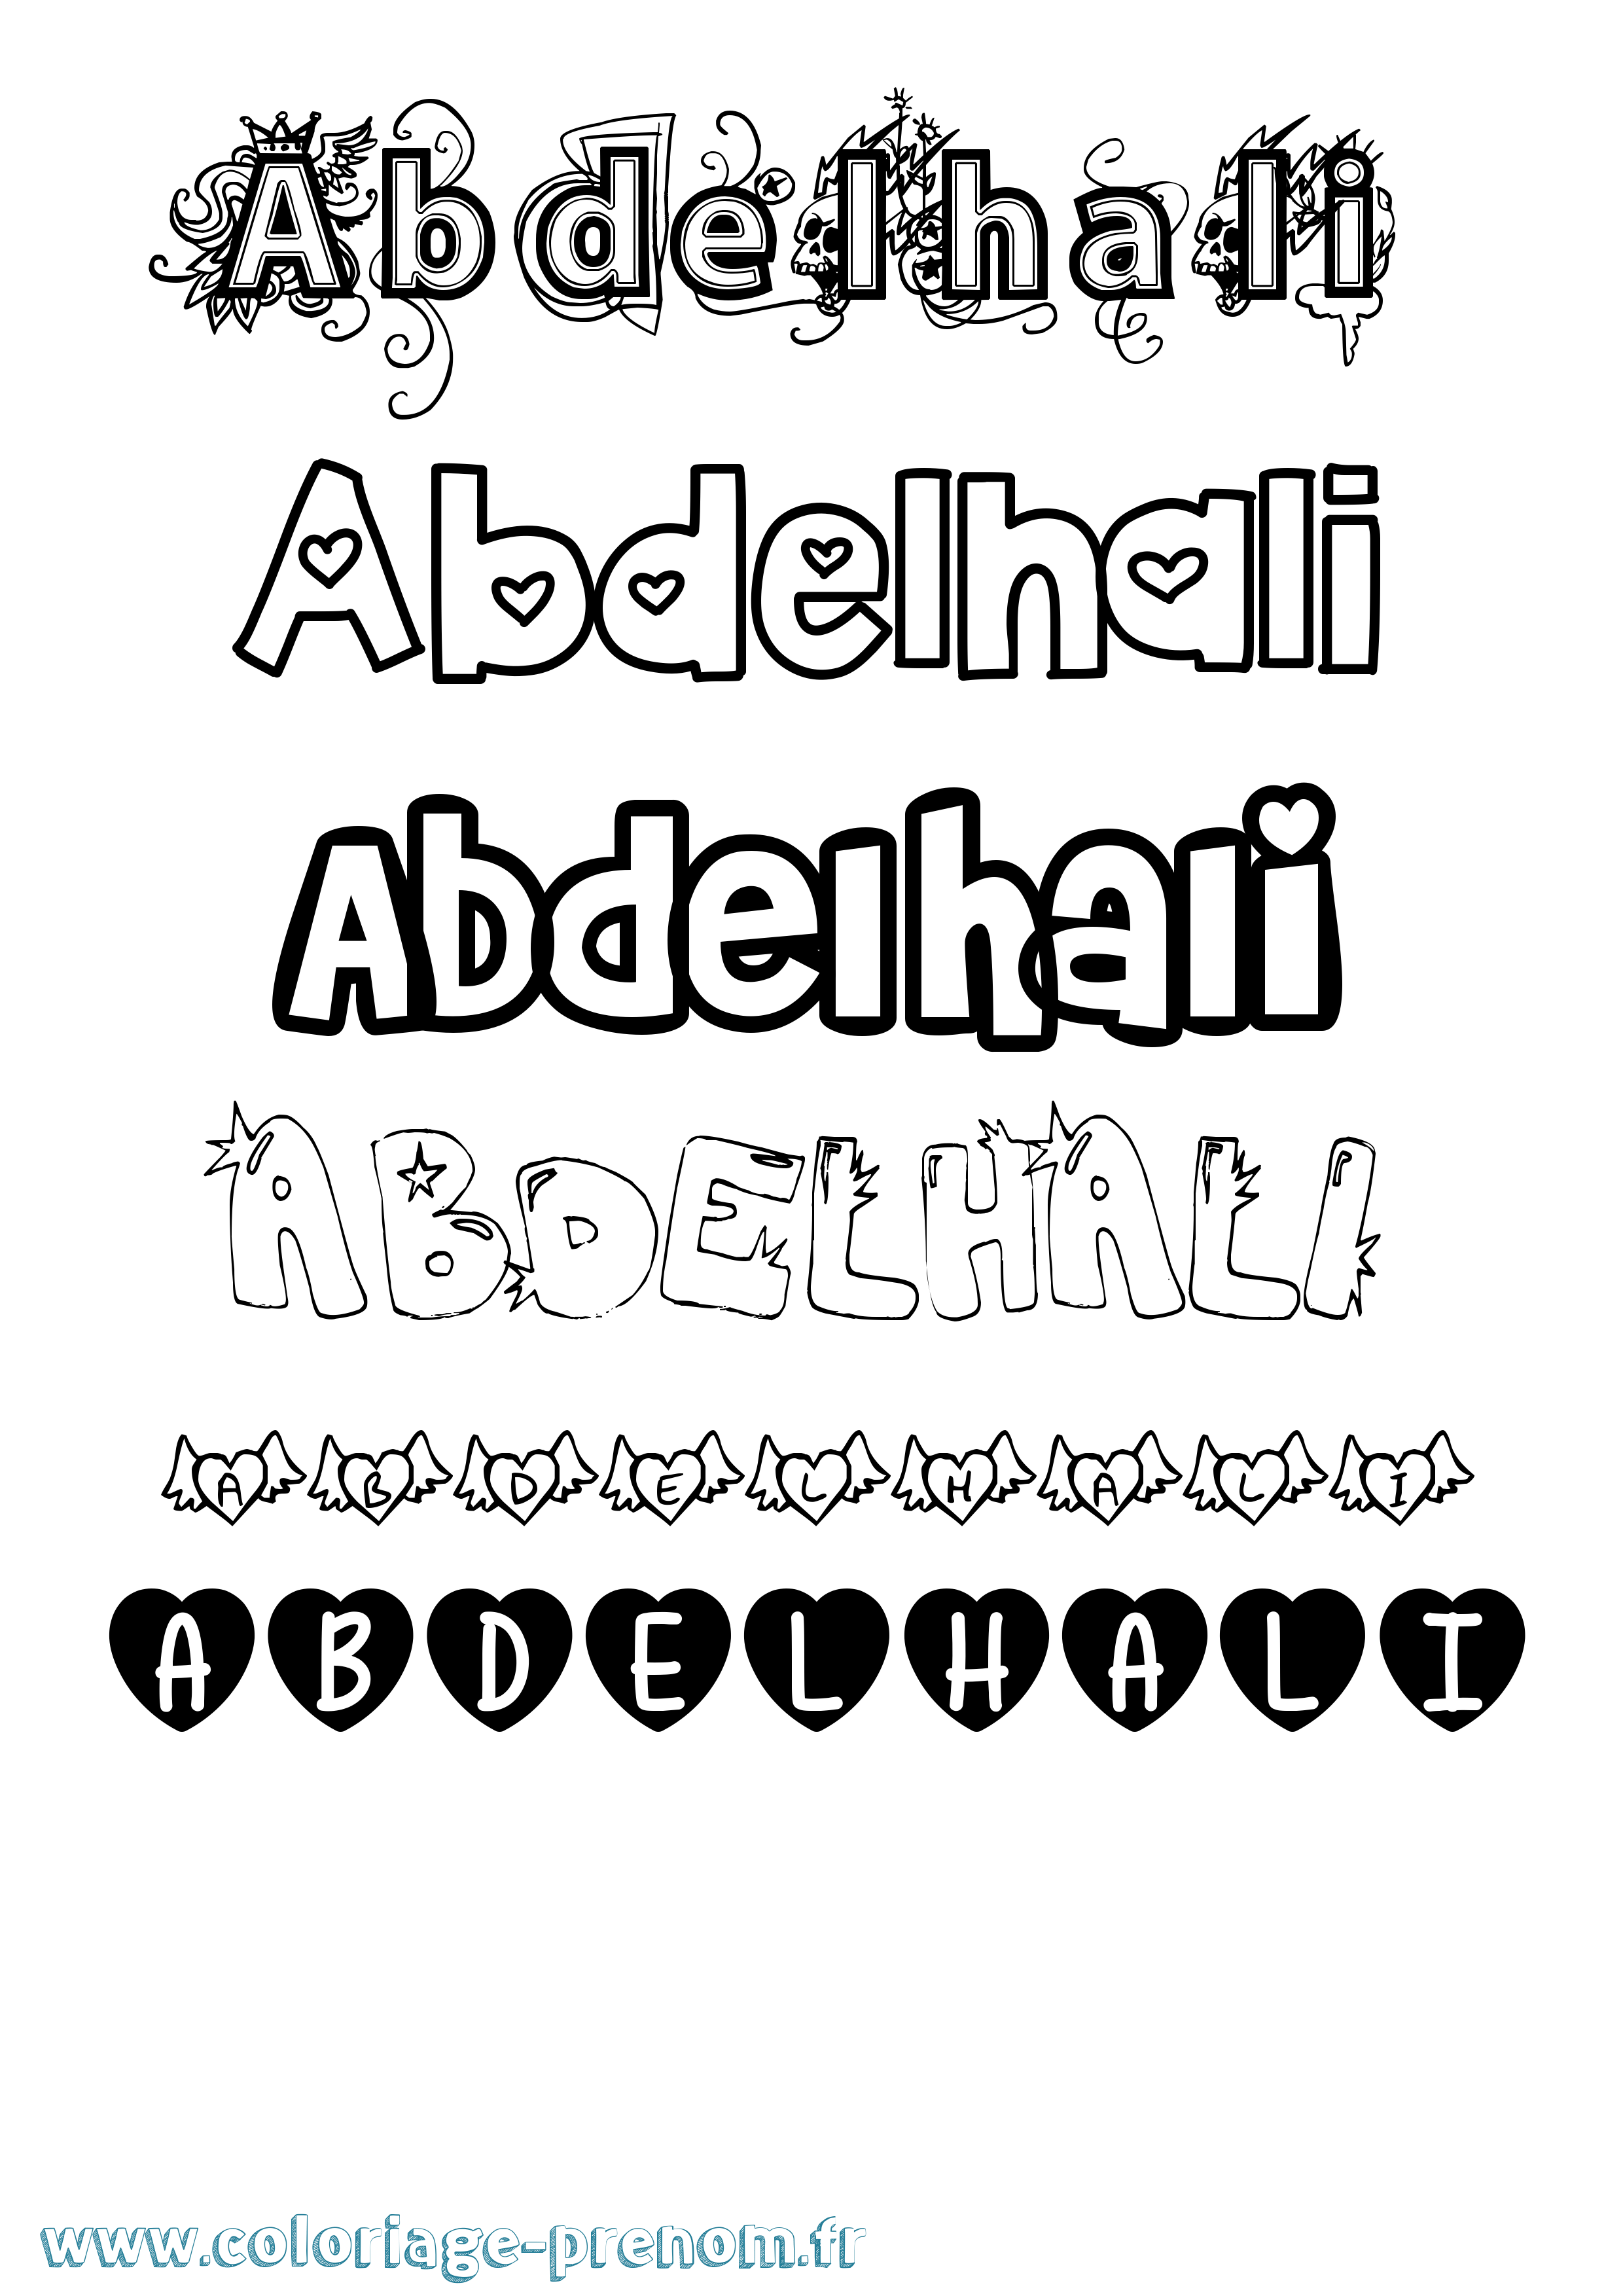 Coloriage prénom Abdelhali Girly